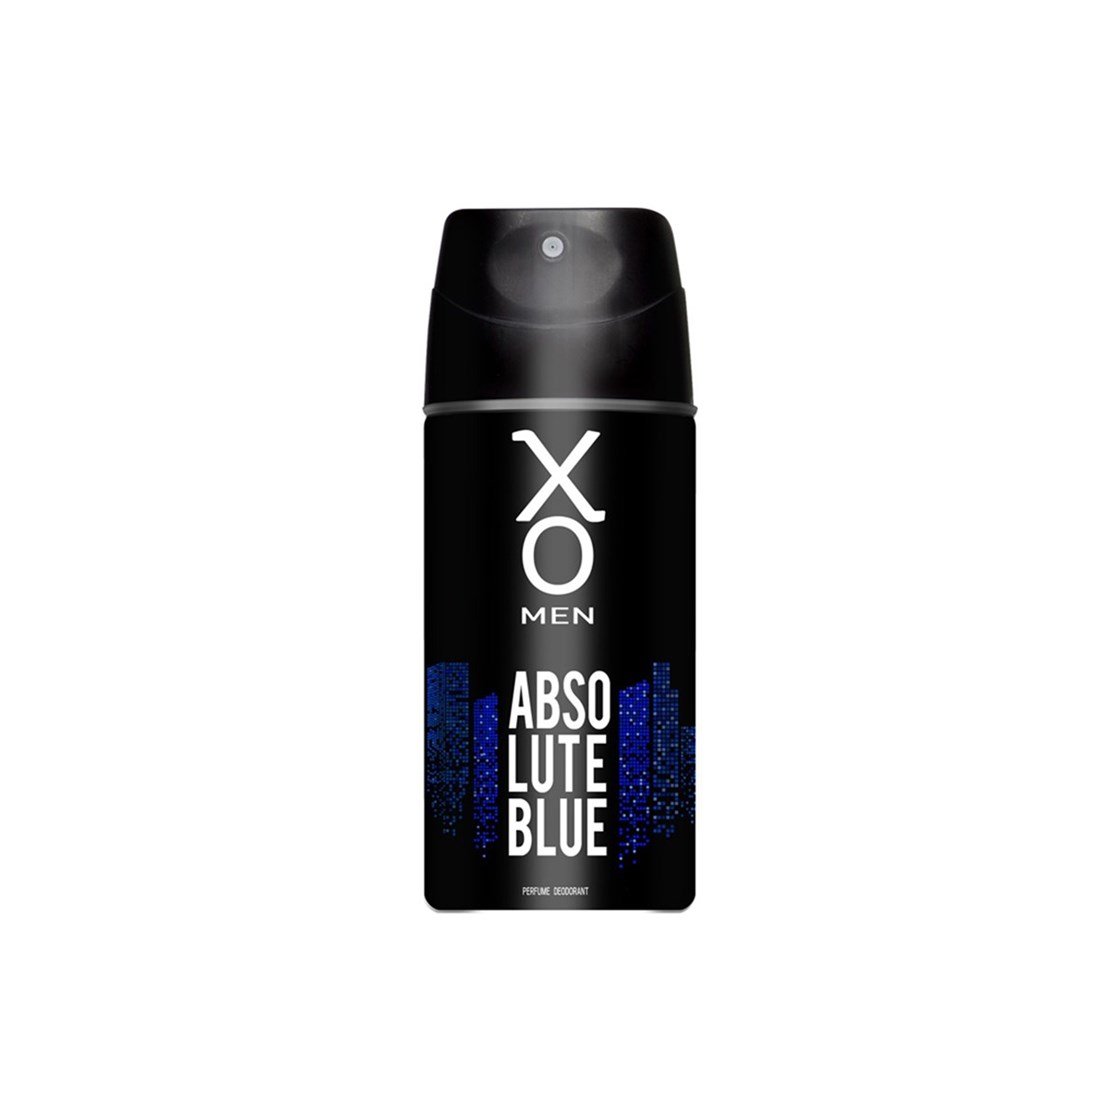 XO Absolute Blue Erkek Deodorant 150 ml Fiyatları İndirimli | Dermoailem.com